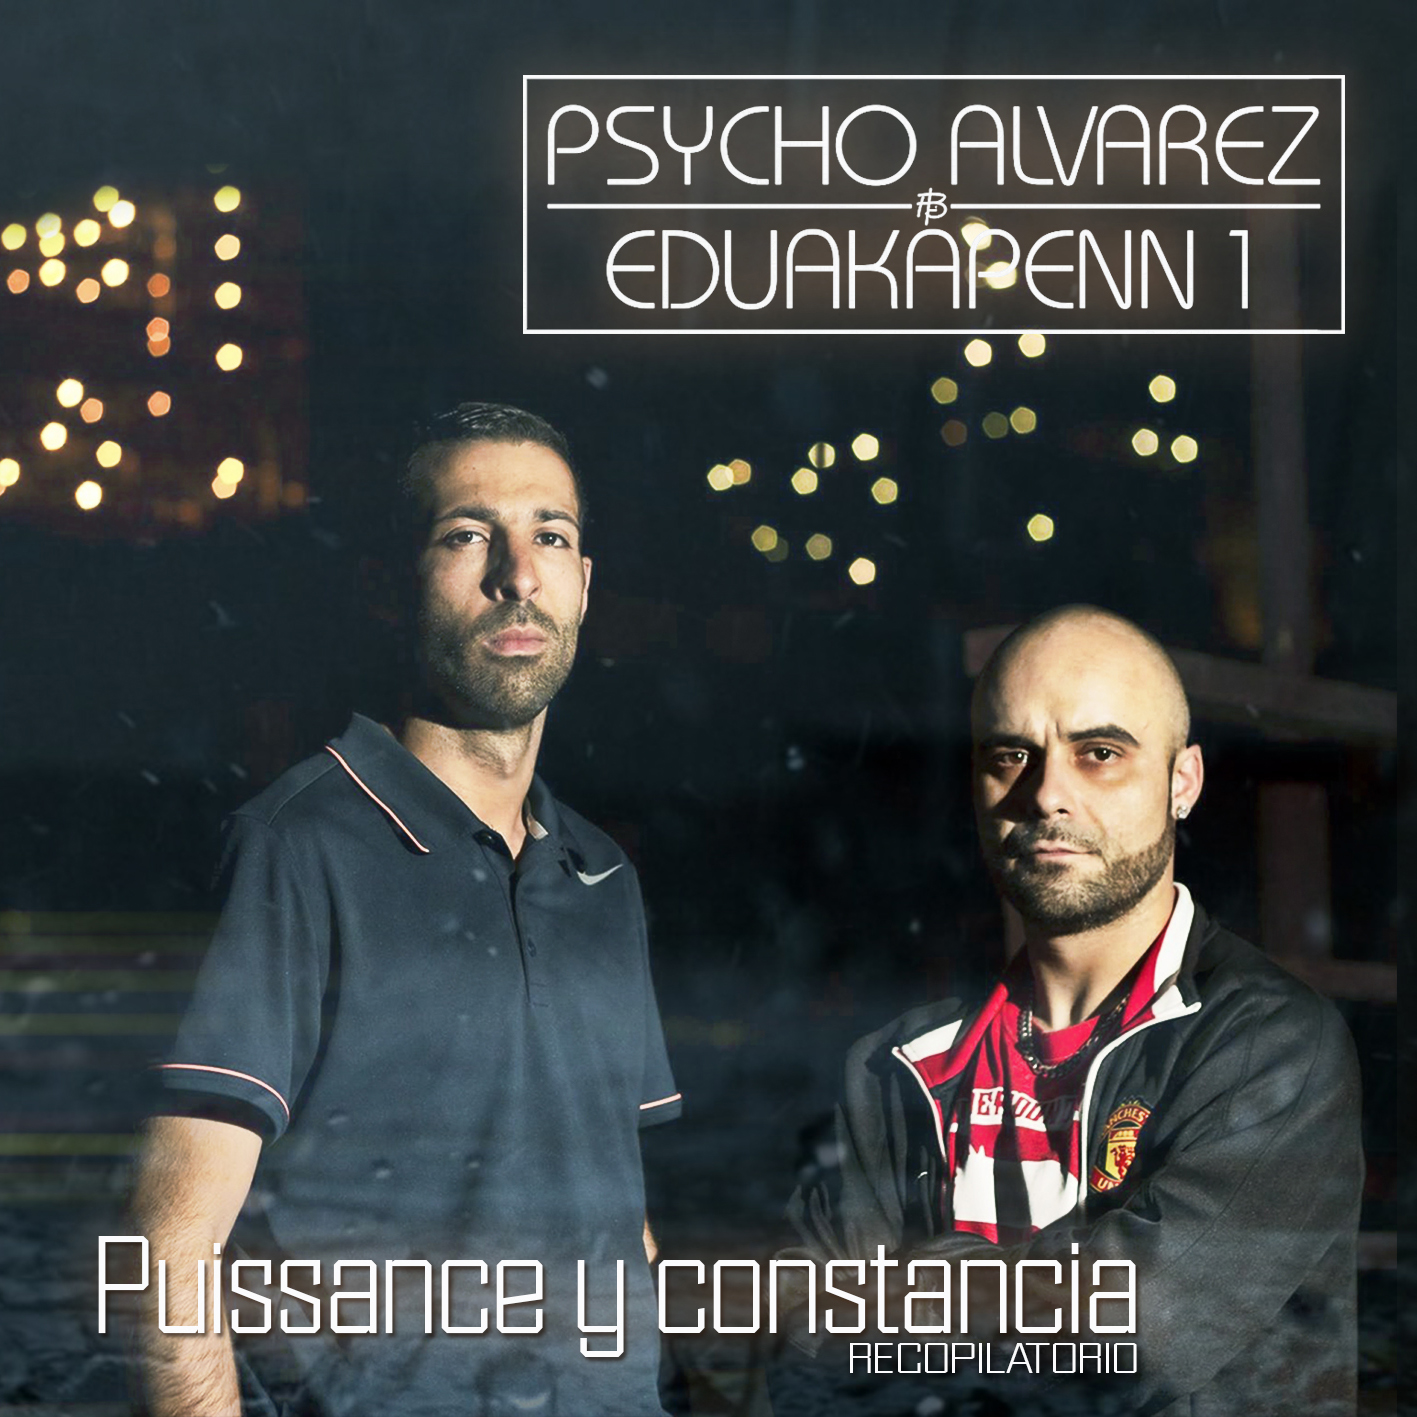 Psycho Alvarez & EduakapenN 1